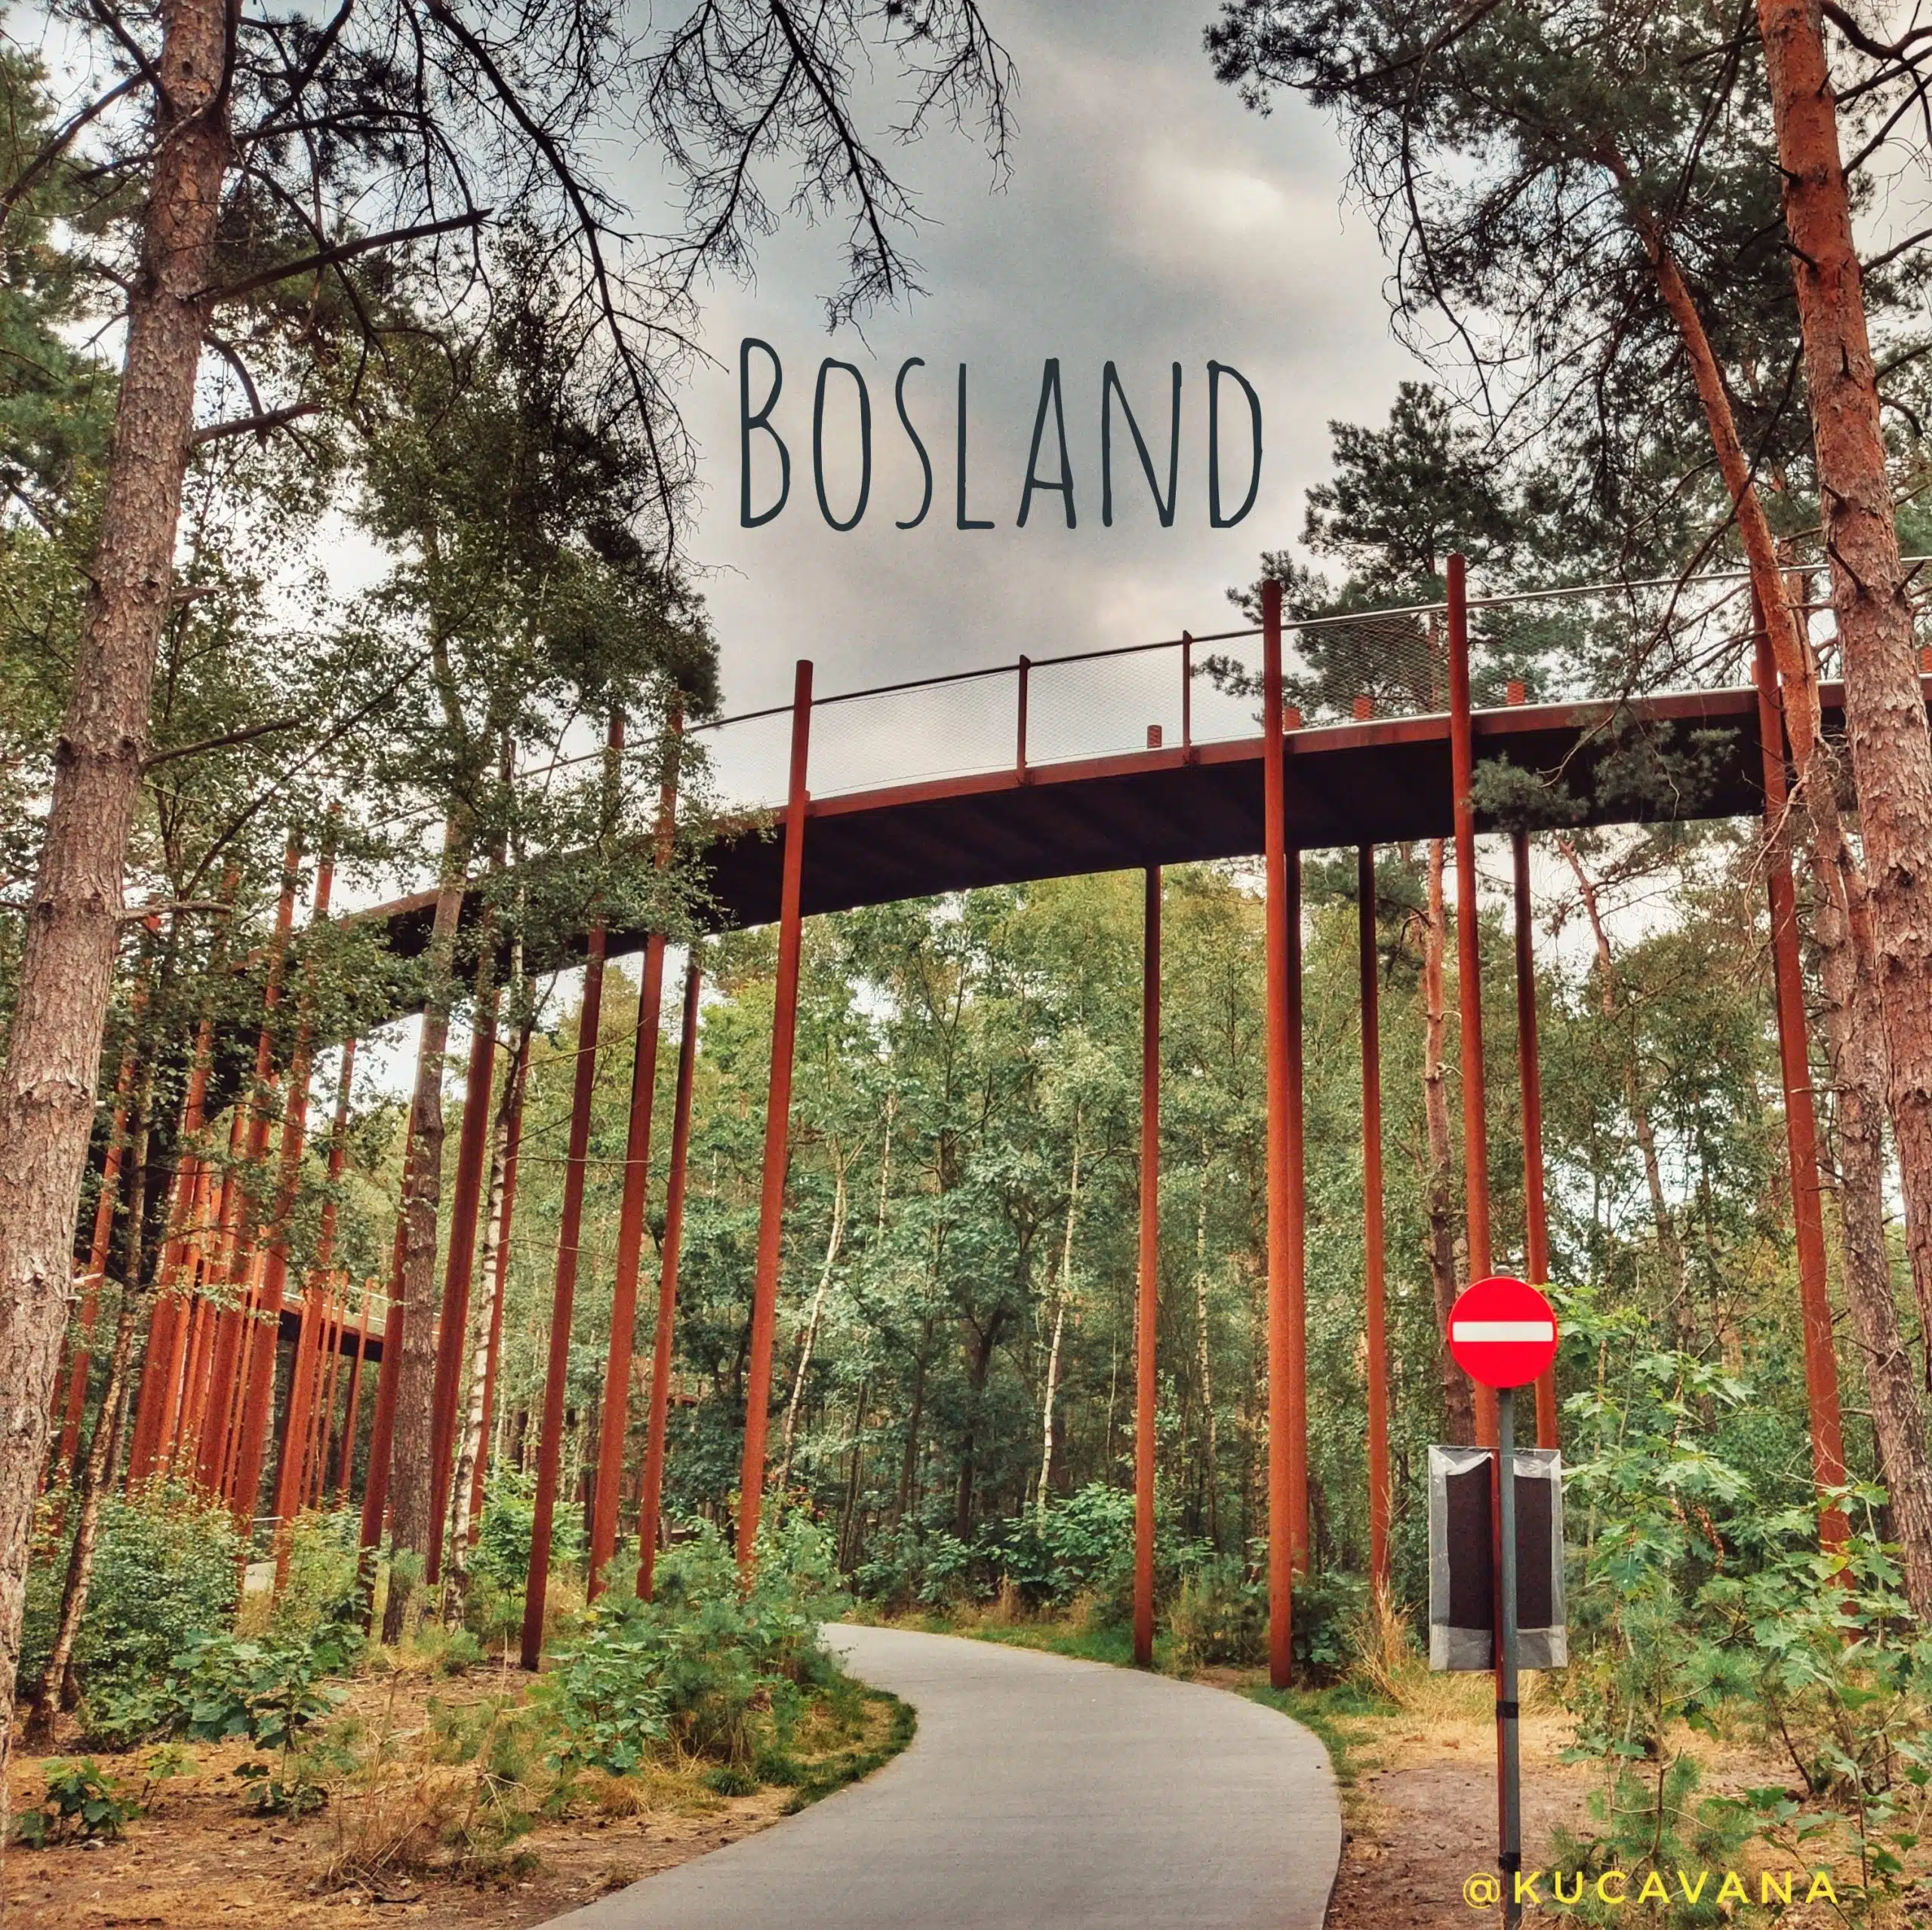 Pista ciclabile Bosland Limburg sopra gli alberi